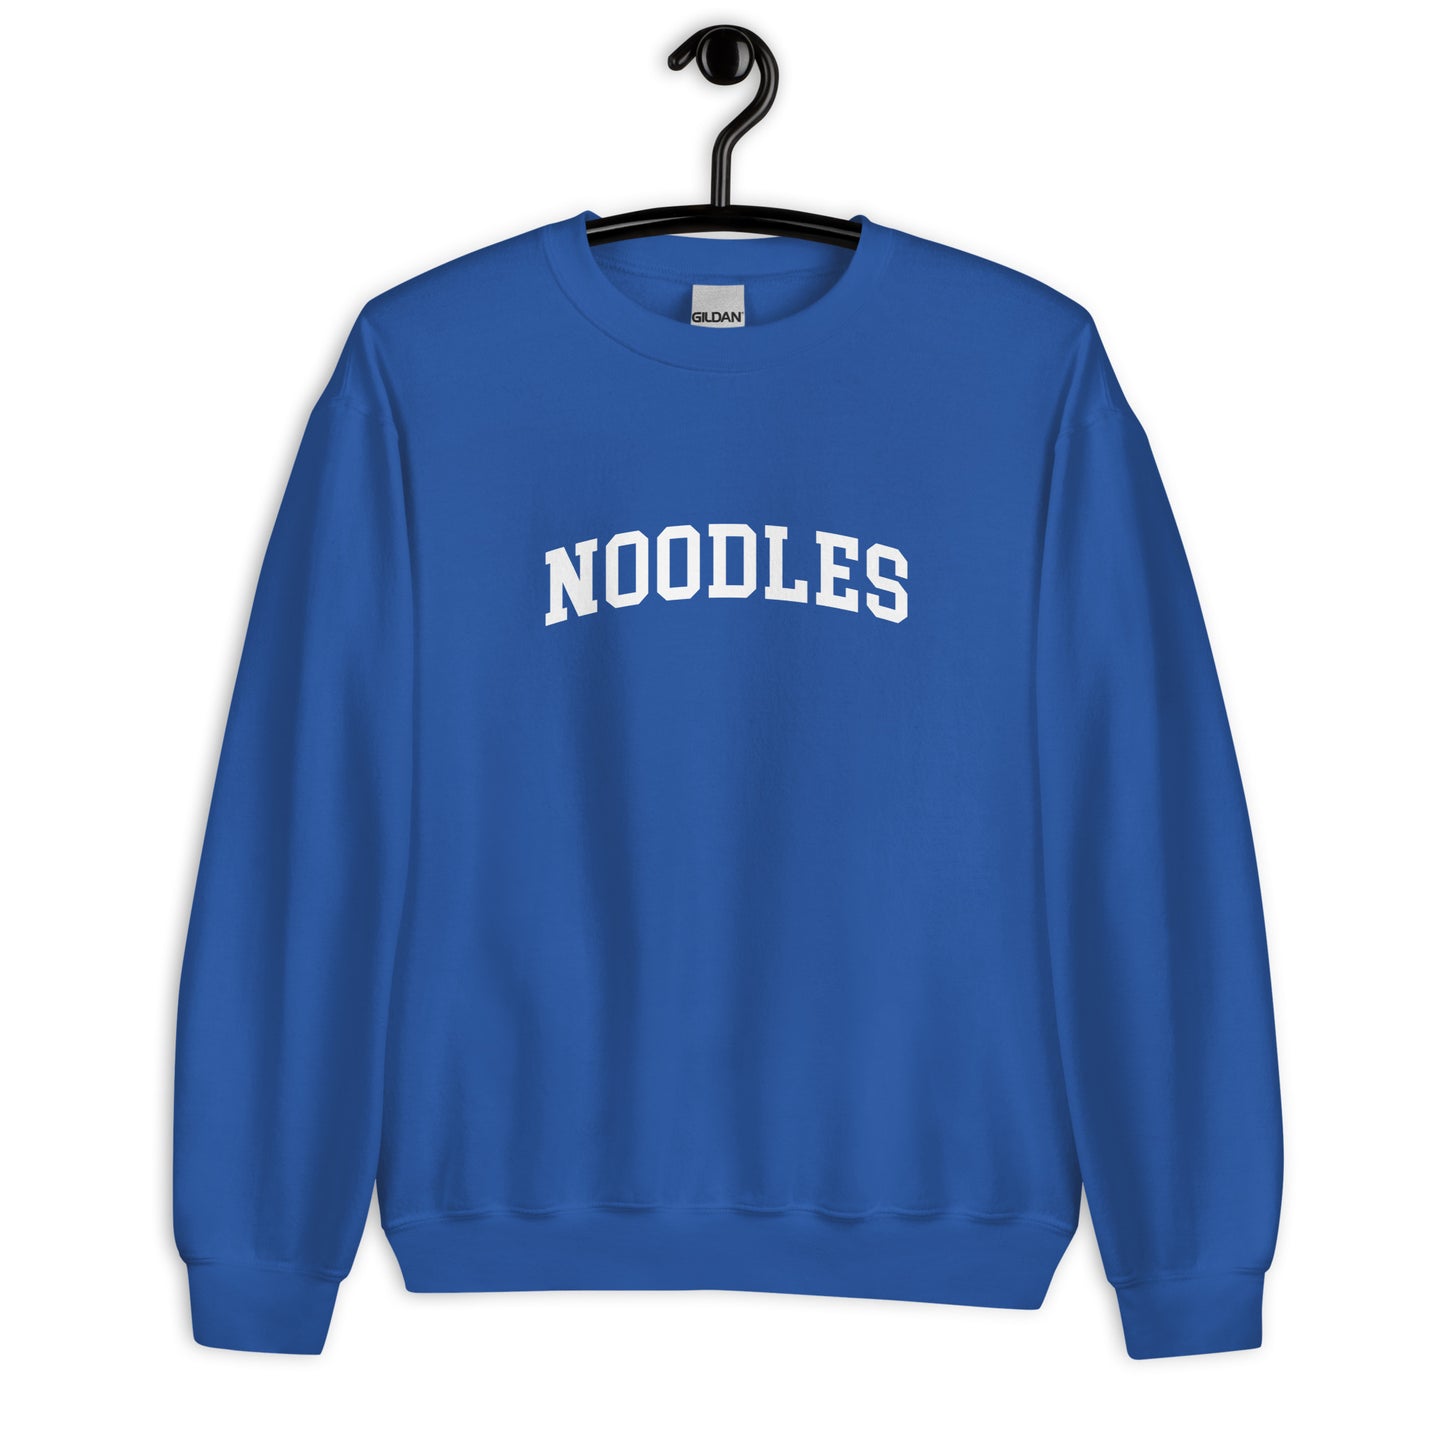 Noodles Sweatshirt - Arched Font